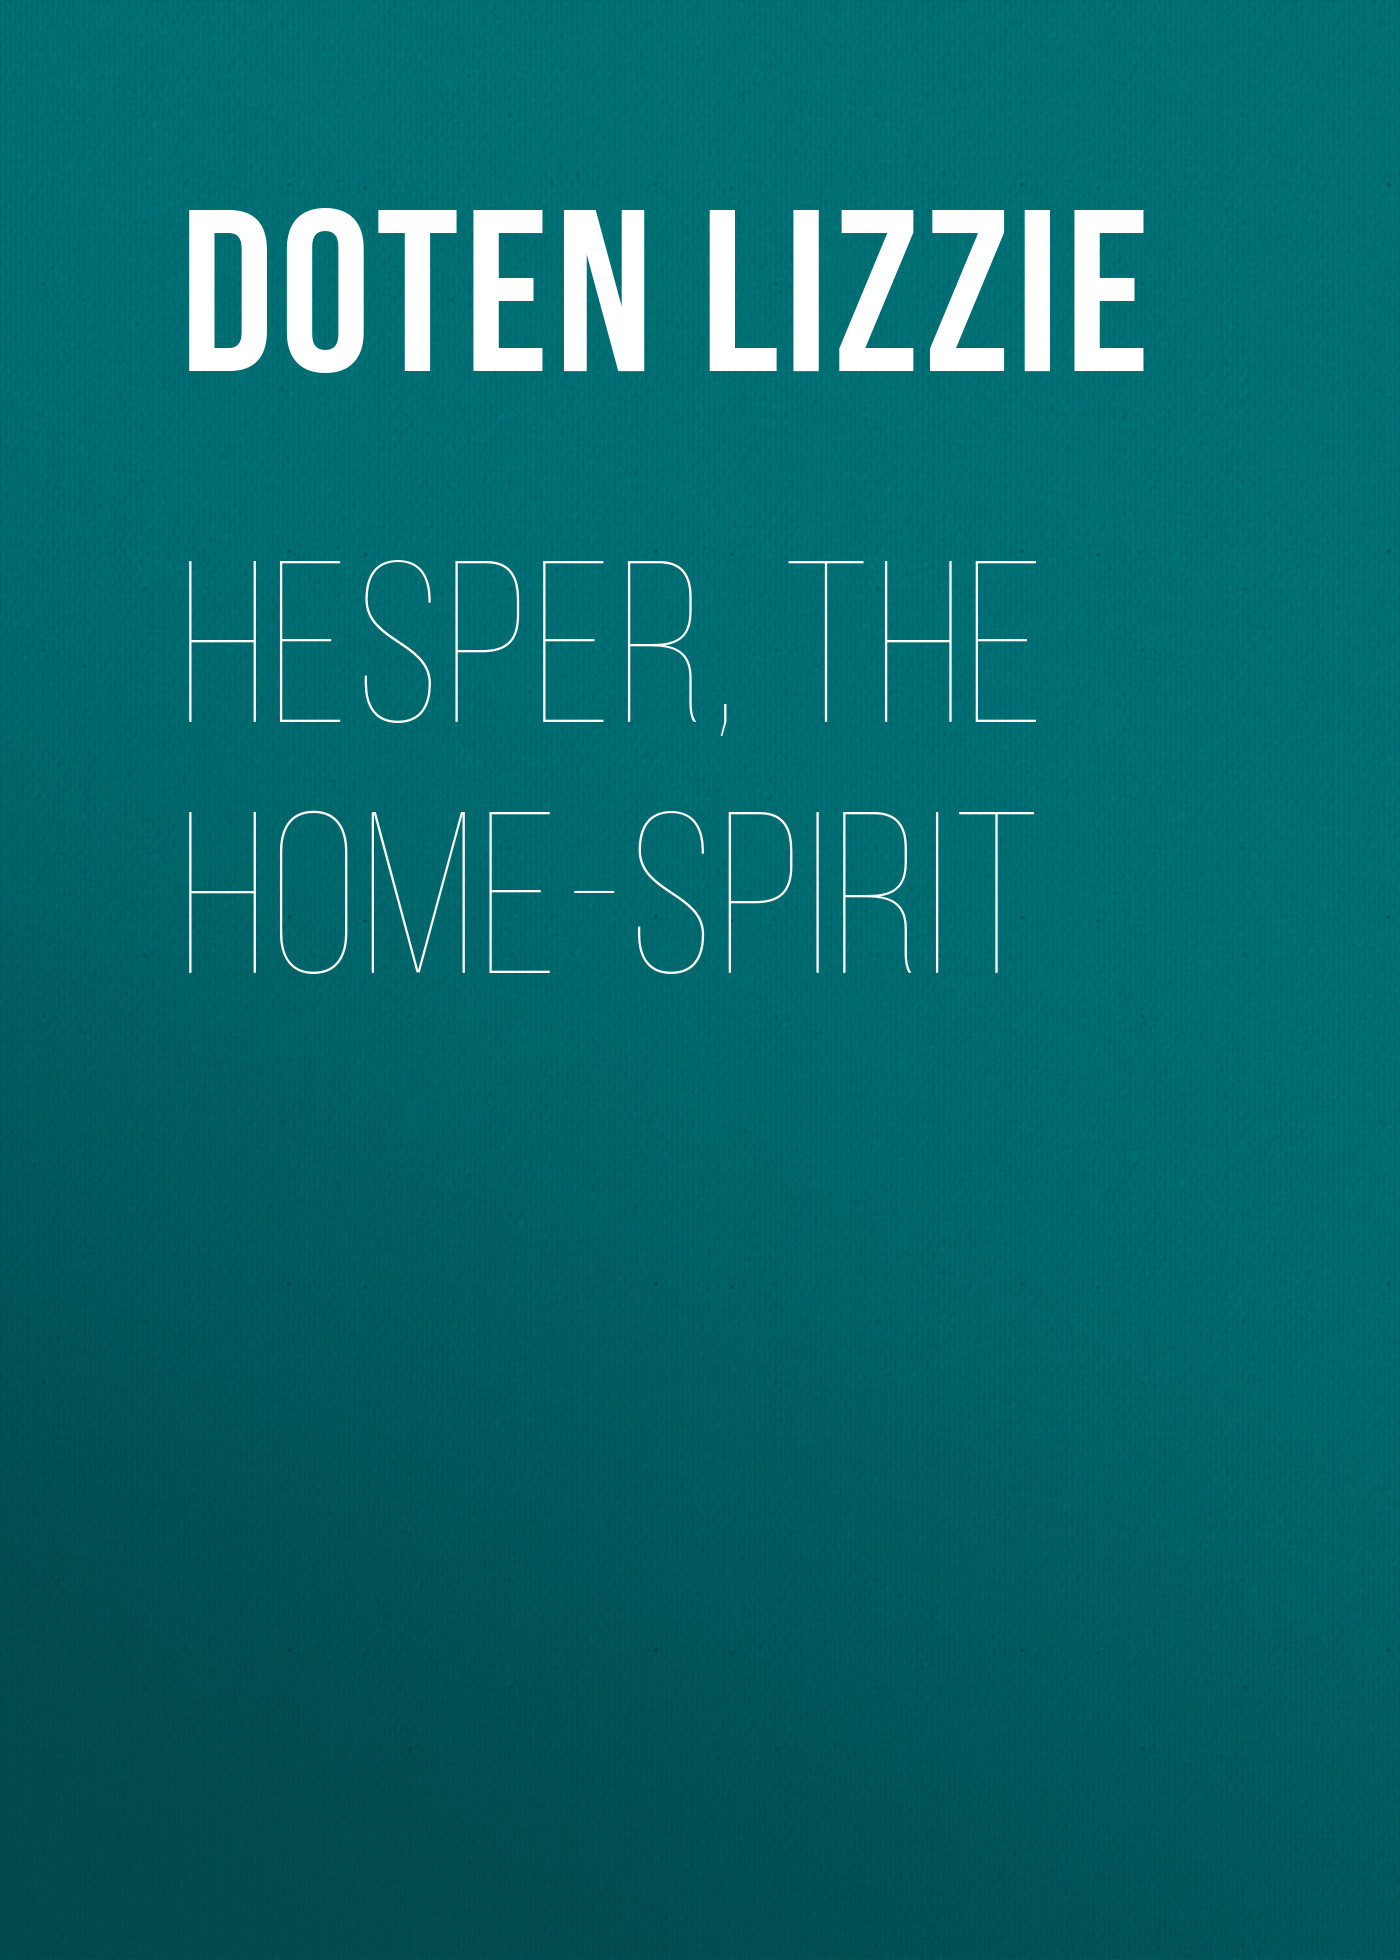 Книга Hesper, the Home-Spirit из серии , созданная Lizzie Doten, может относится к жанру Зарубежная старинная литература, Зарубежная классика. Стоимость электронной книги Hesper, the Home-Spirit с идентификатором 24621757 составляет 0 руб.